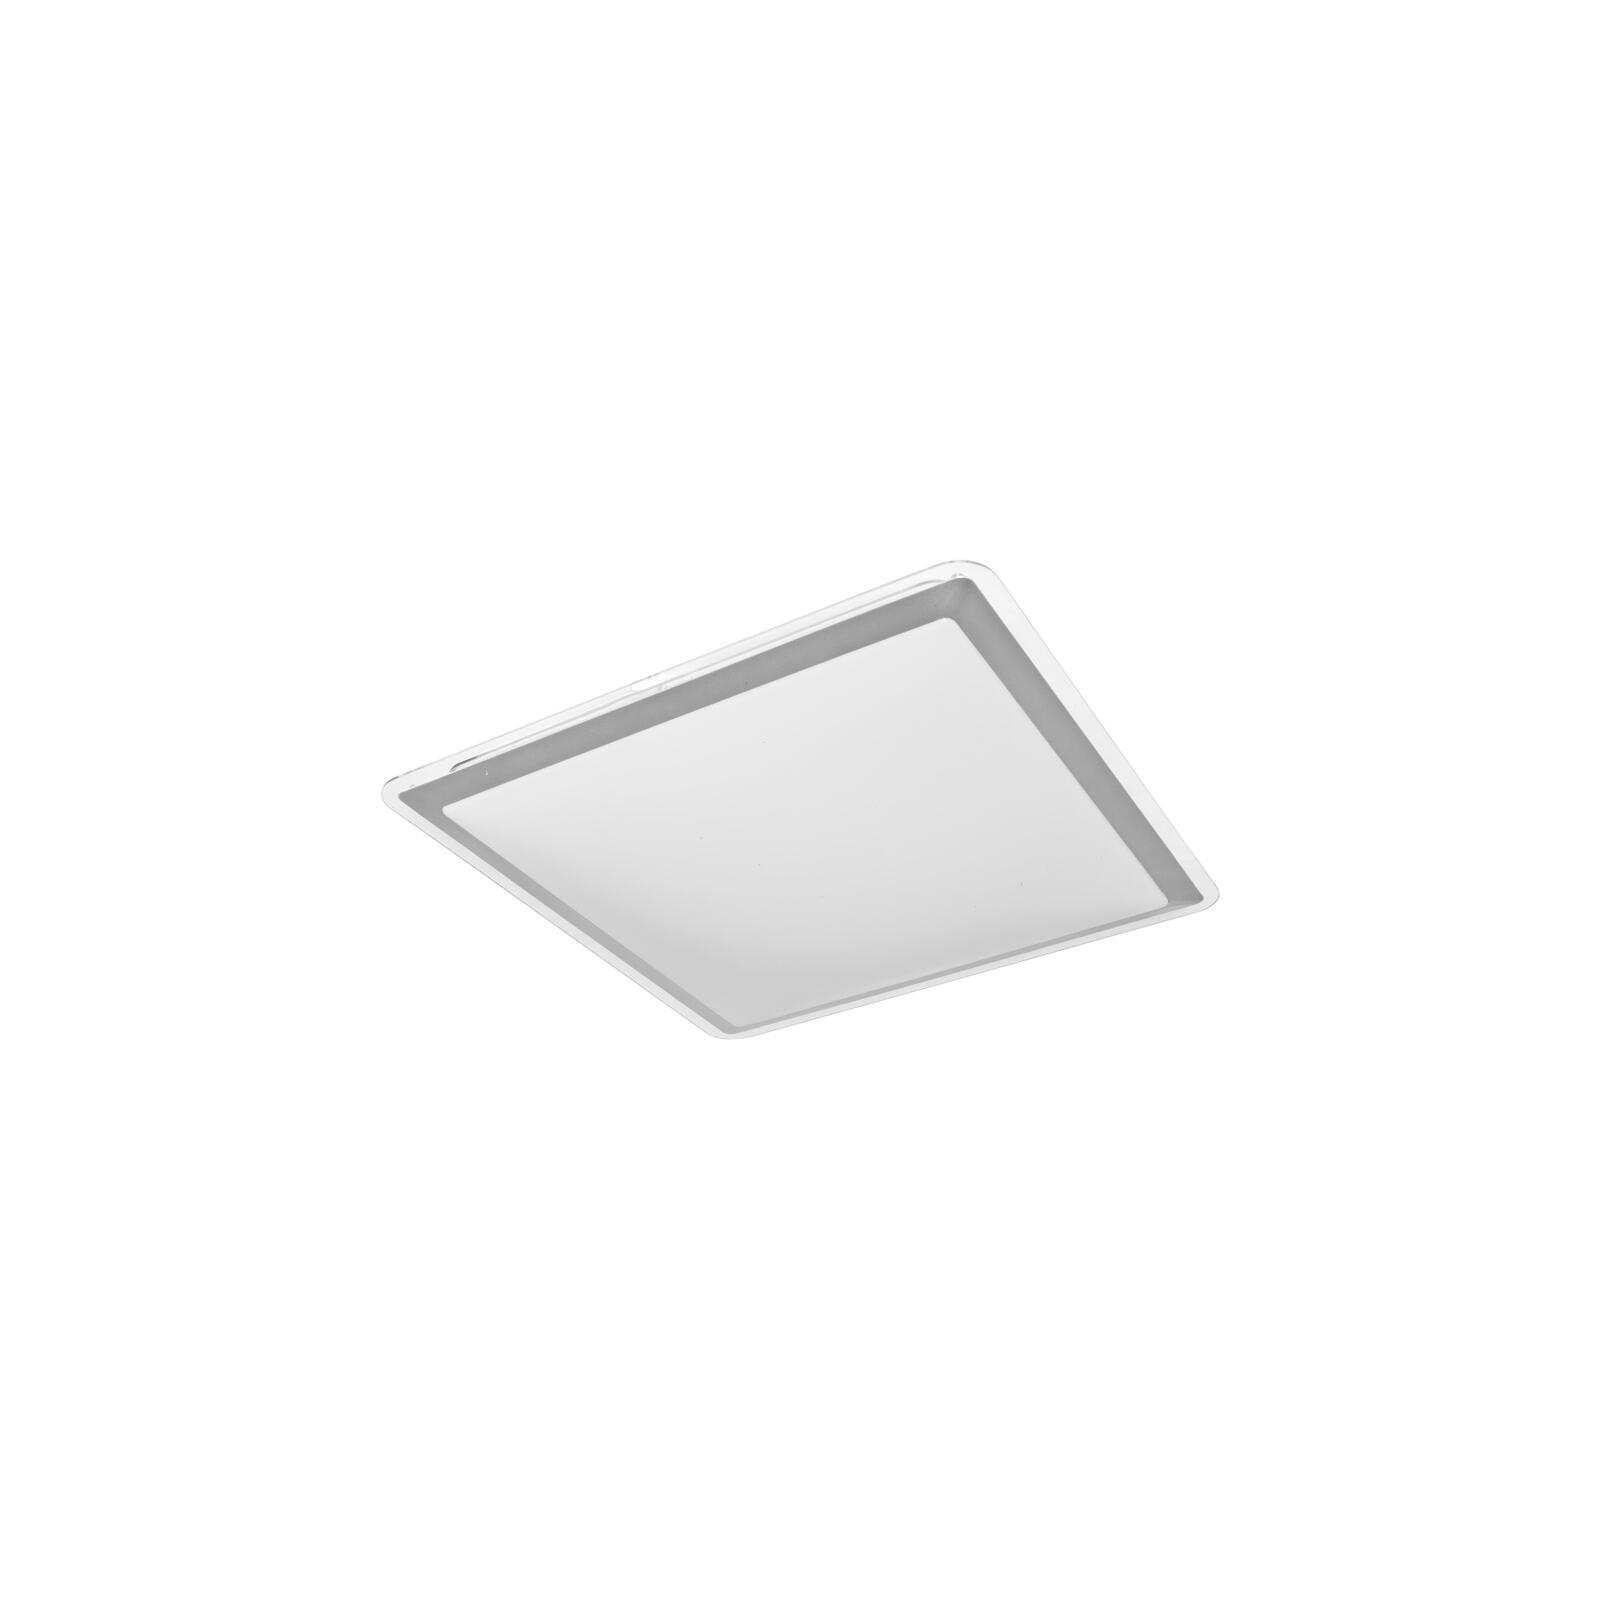 eckig & silber - IP44 Leuchten cm Lampen LED warmweiß Deckenleuchte Badezimmer Onlineshop 43x43